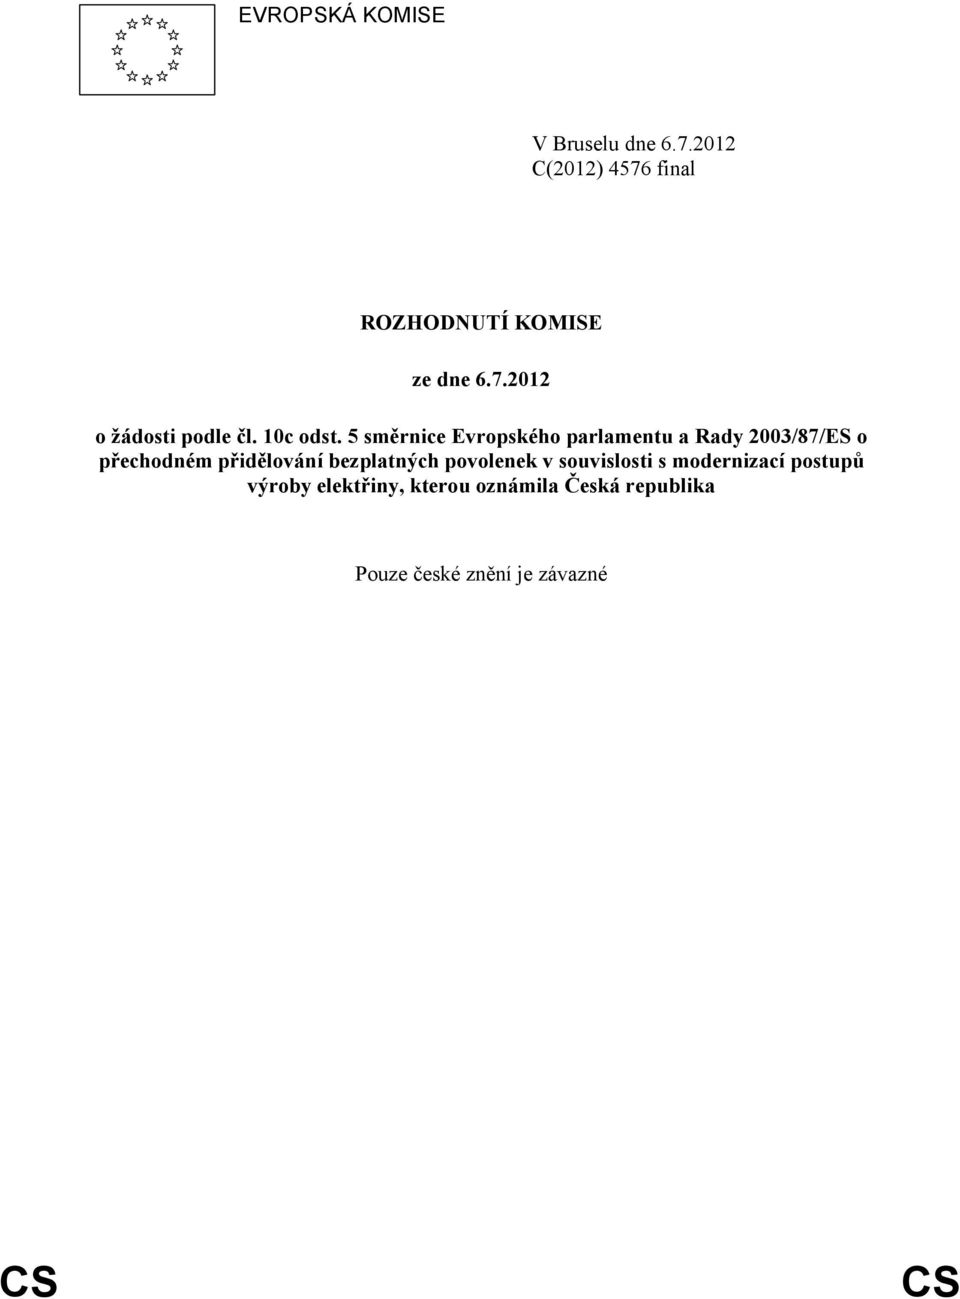 5 směrnice Evropského parlamentu a Rady 2003/87/ES o přechodném přidělování